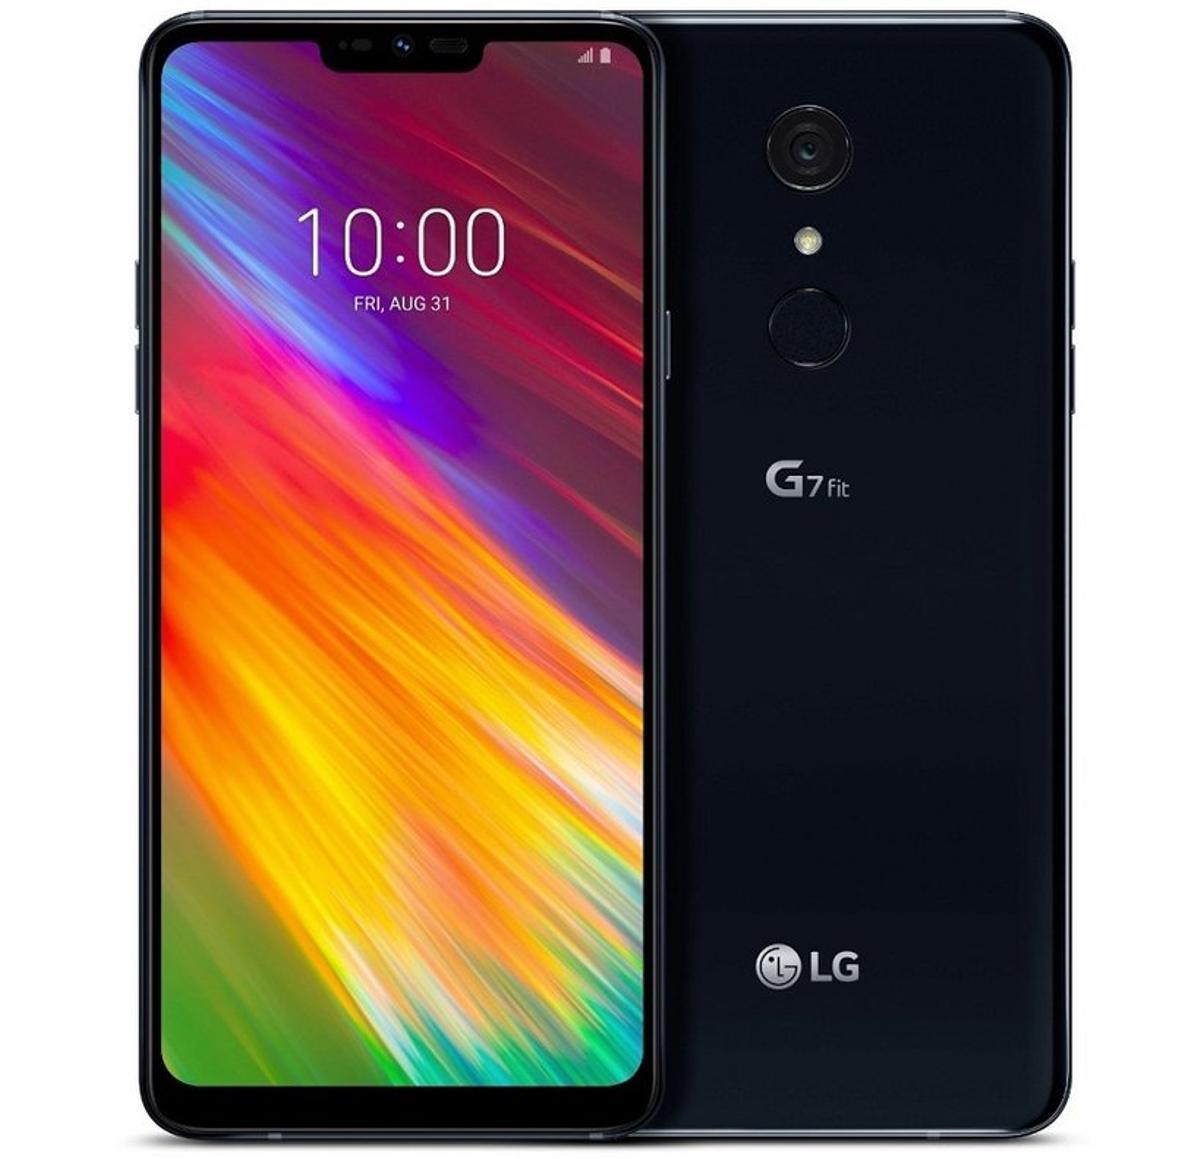 LG G7 Fit, el smartphone de gama media presentado en el #IFA2018